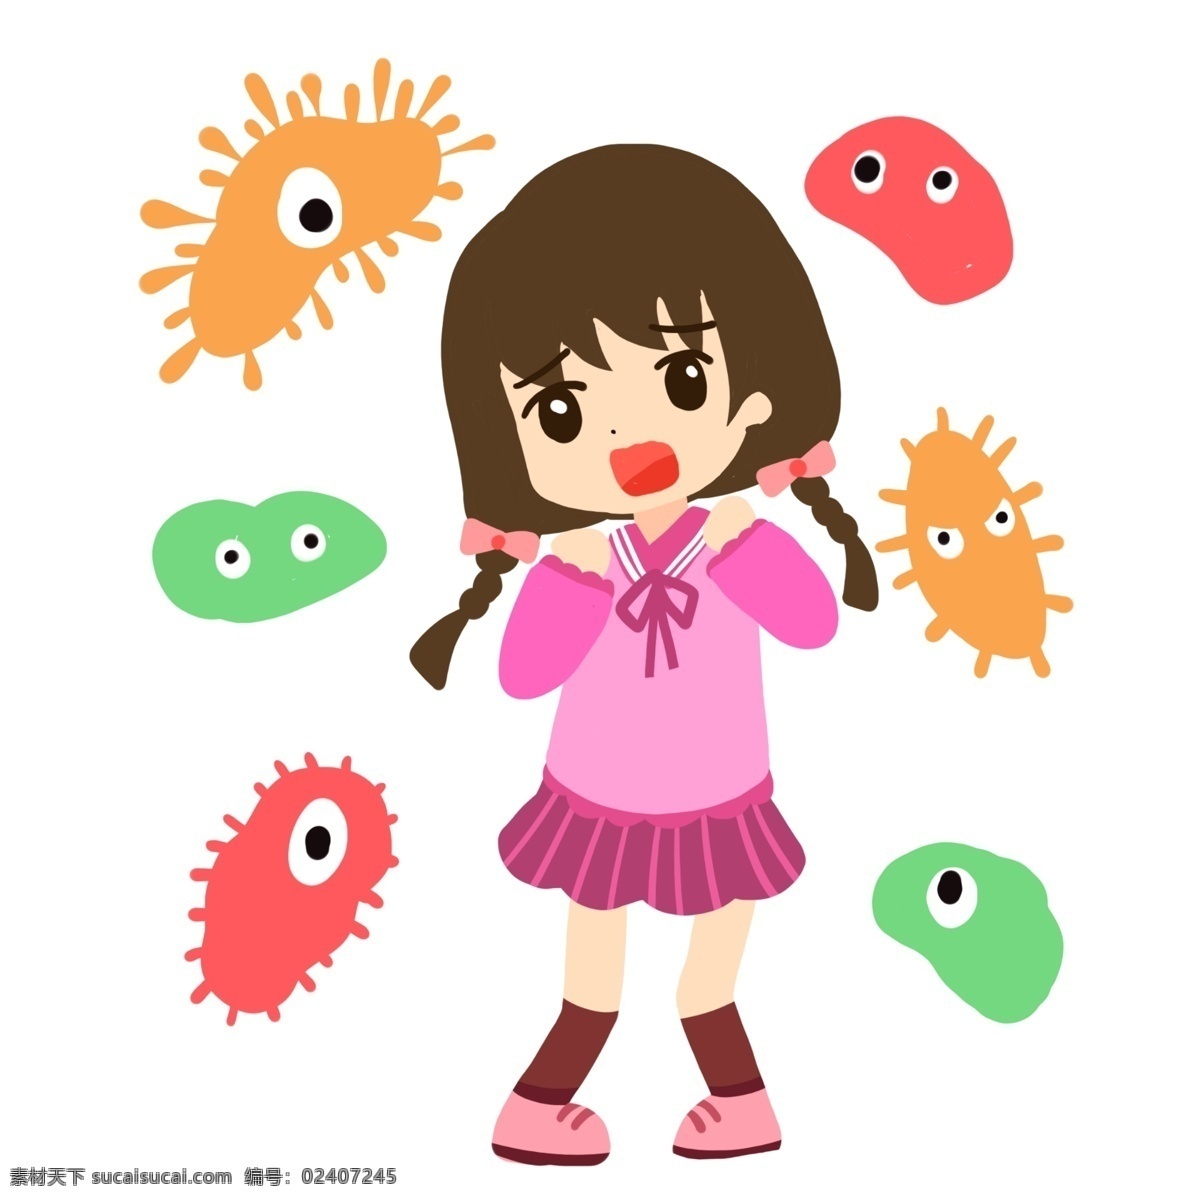 女孩 害怕 细菌 入侵 卡通 原核 生物 大肠 杆菌 病毒 医学 疾病 生病 菌体 菌状 细胞